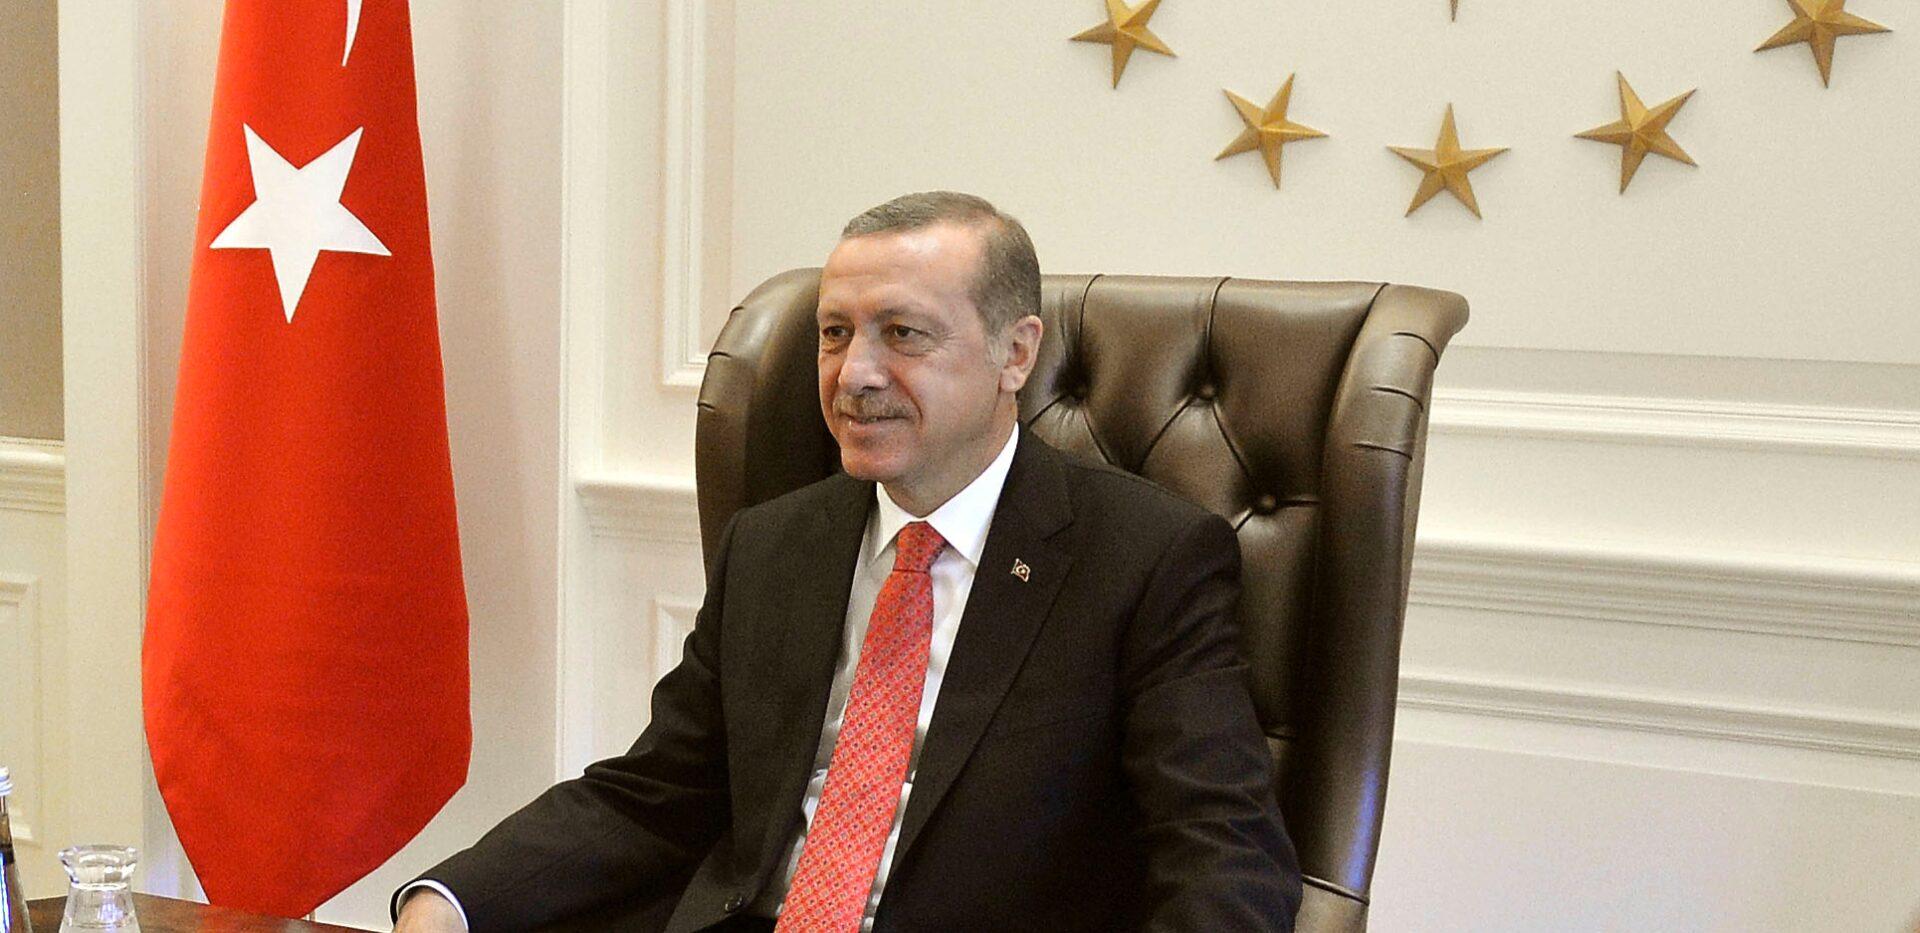 Ο Ερντογάν θα ανακοινώσει “καλά νέα για το μέλλον της Τουρκίας”